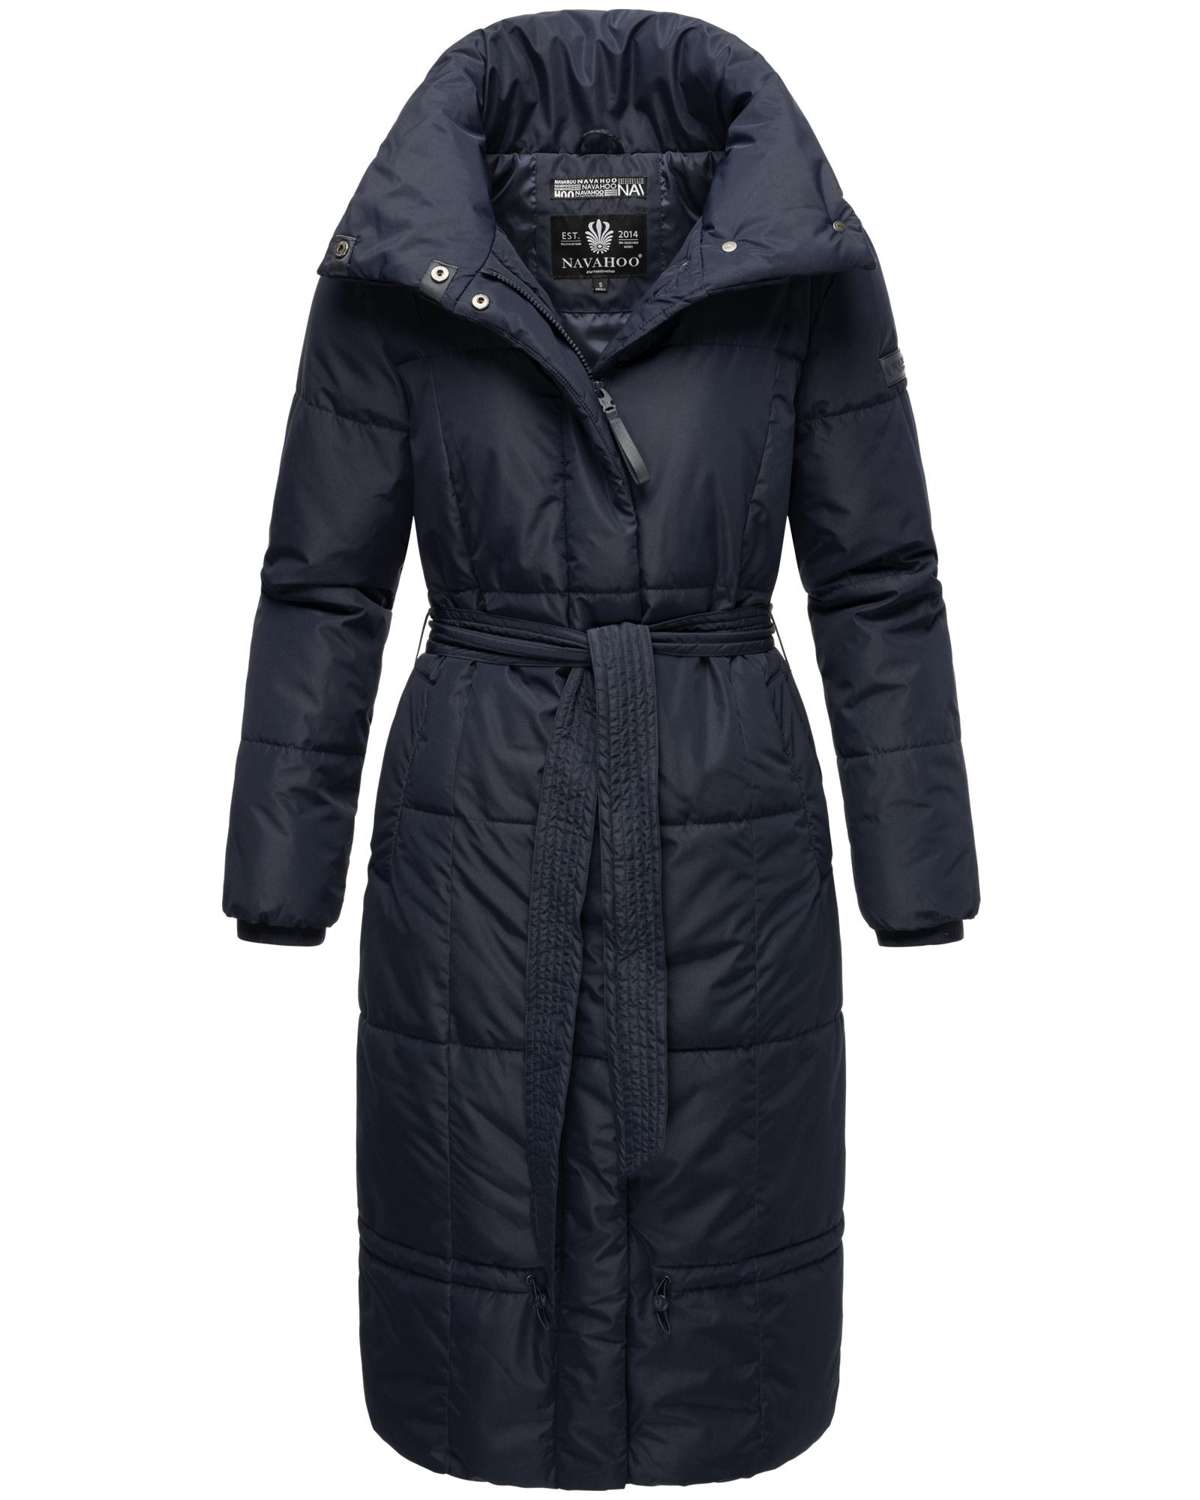 Стеганое пальто, стильное женское зимнее пальто с поясом.